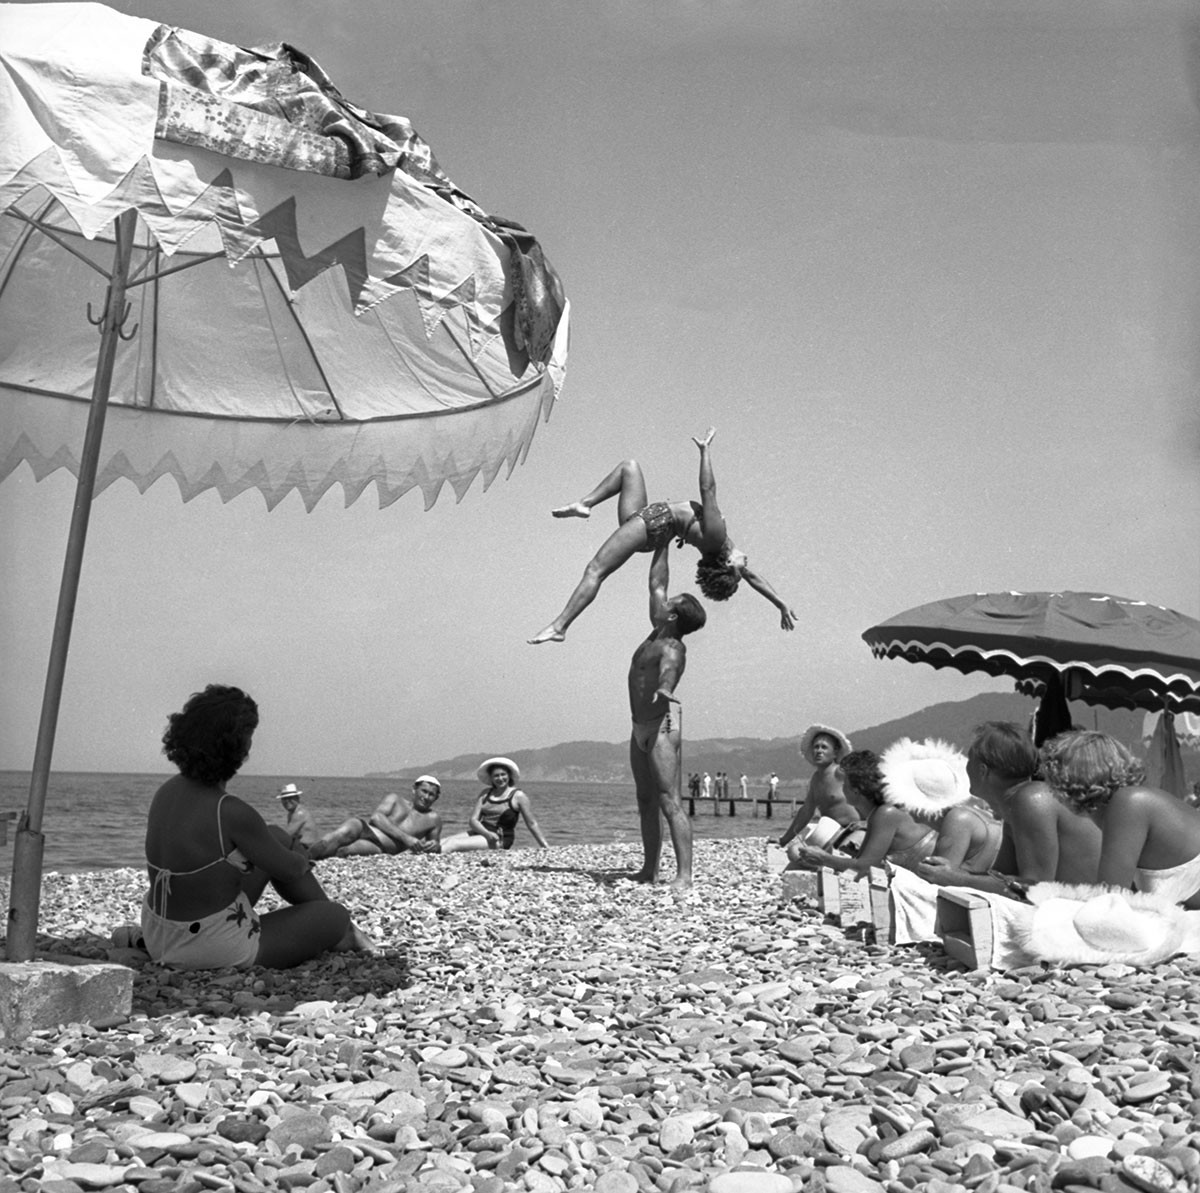 Urlaub in Sotschi, 1956.